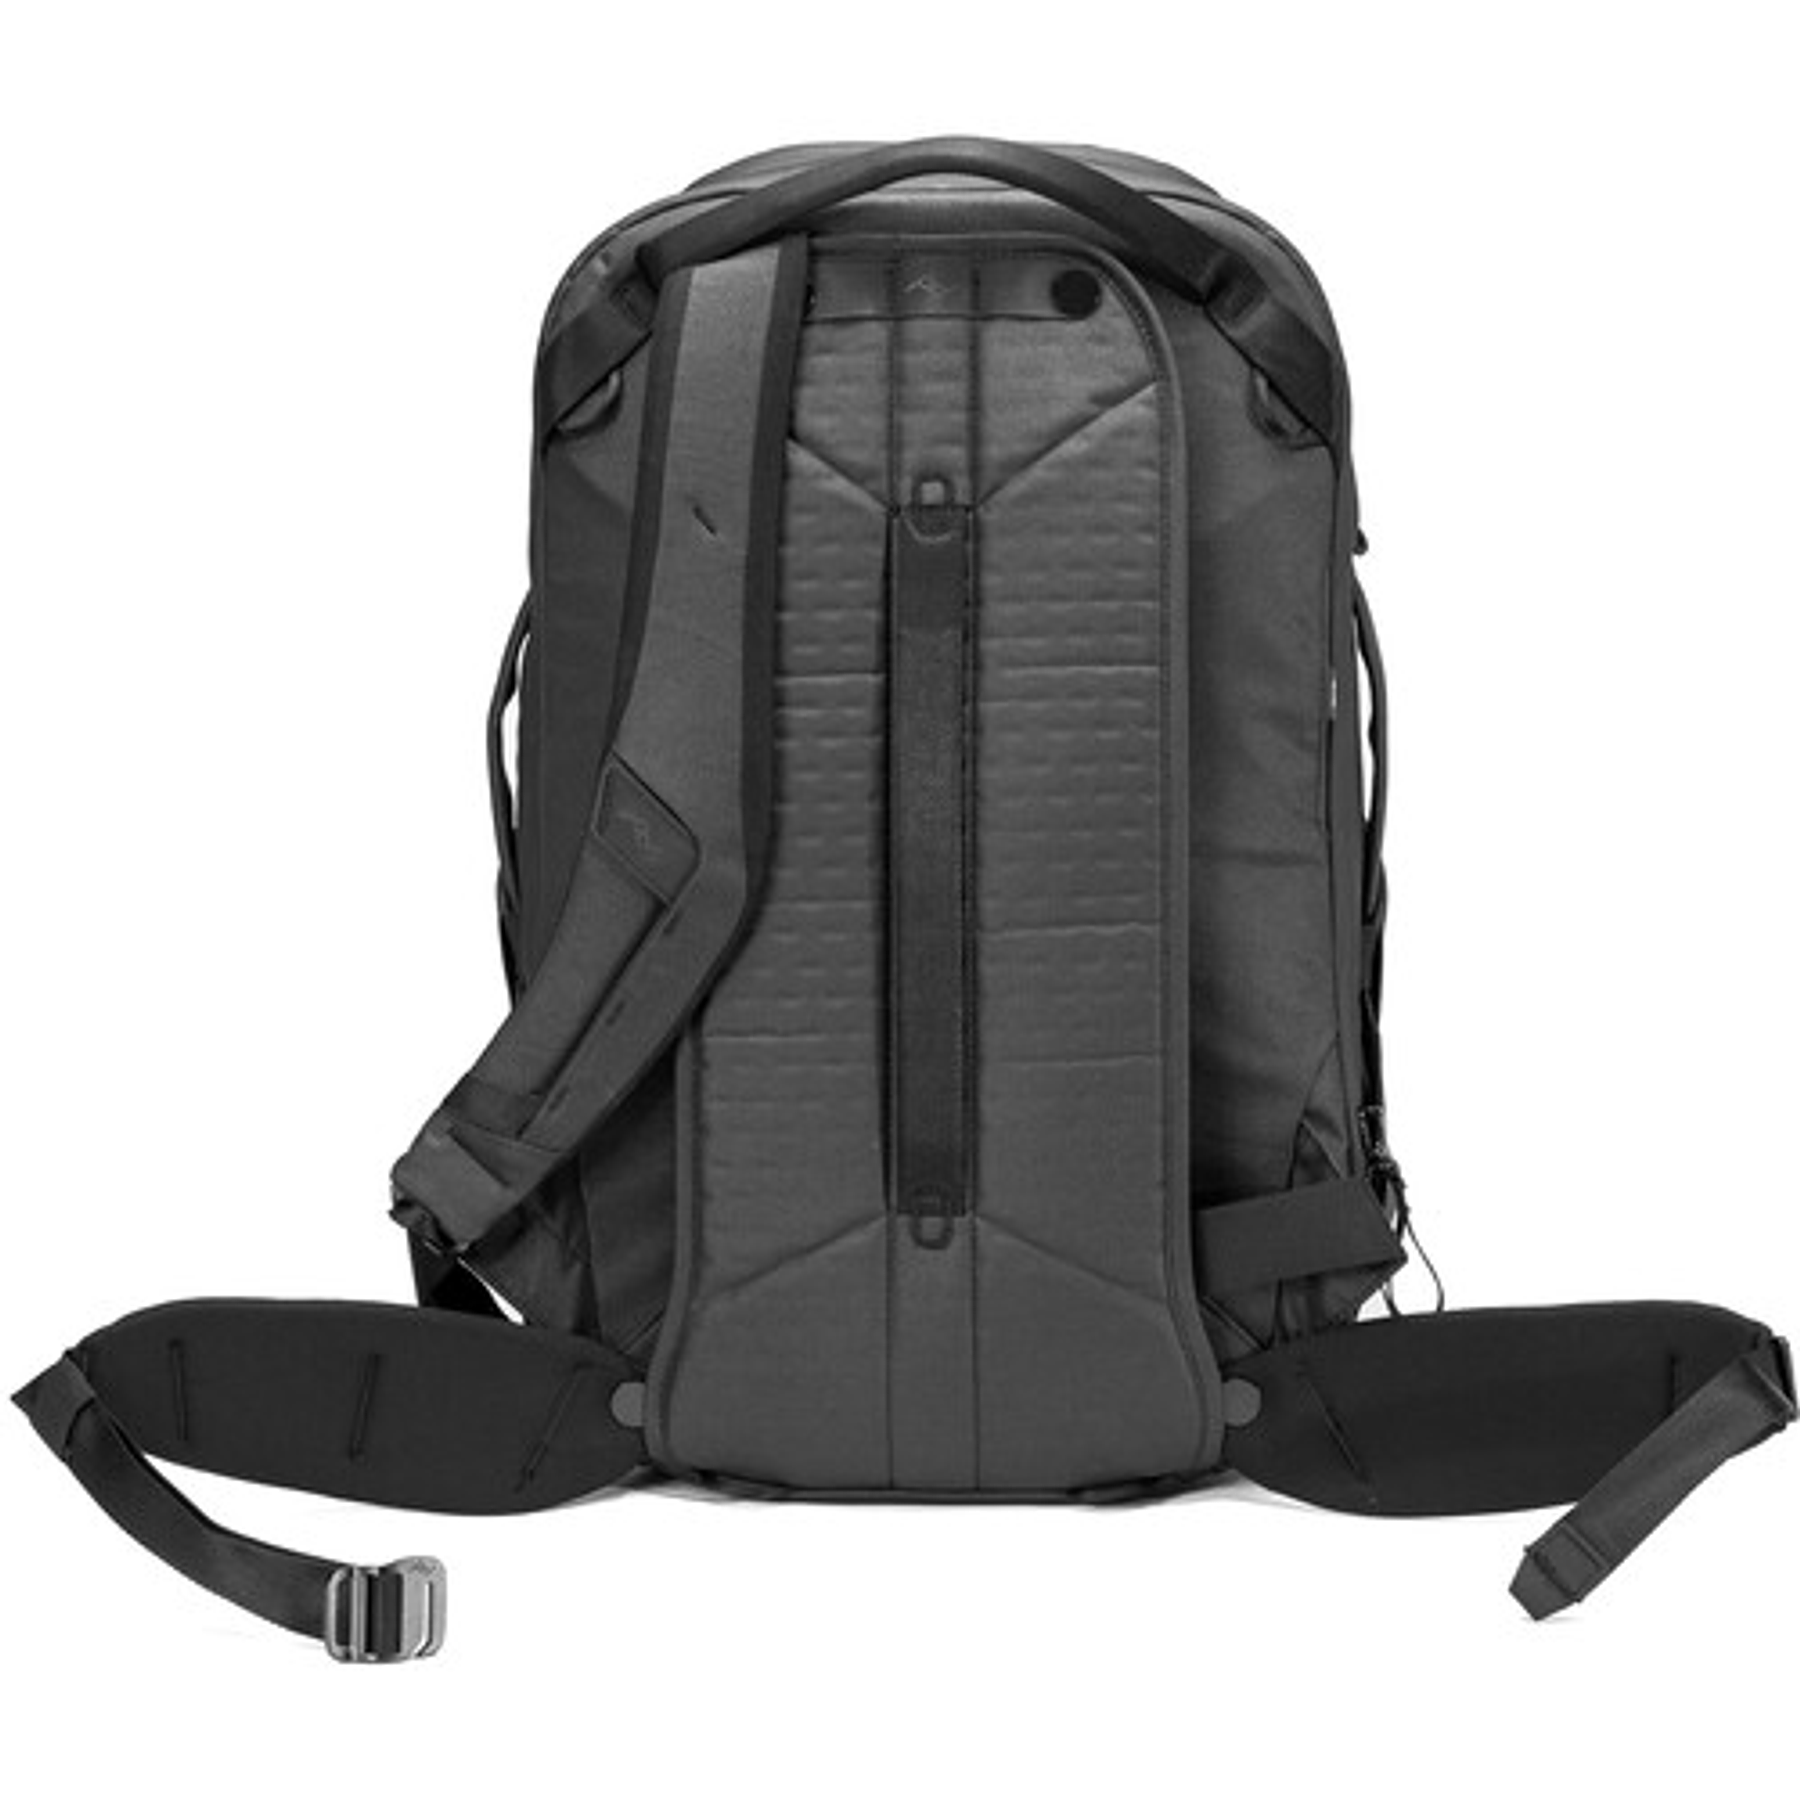 Mochila Travel Backpack 30L Negro